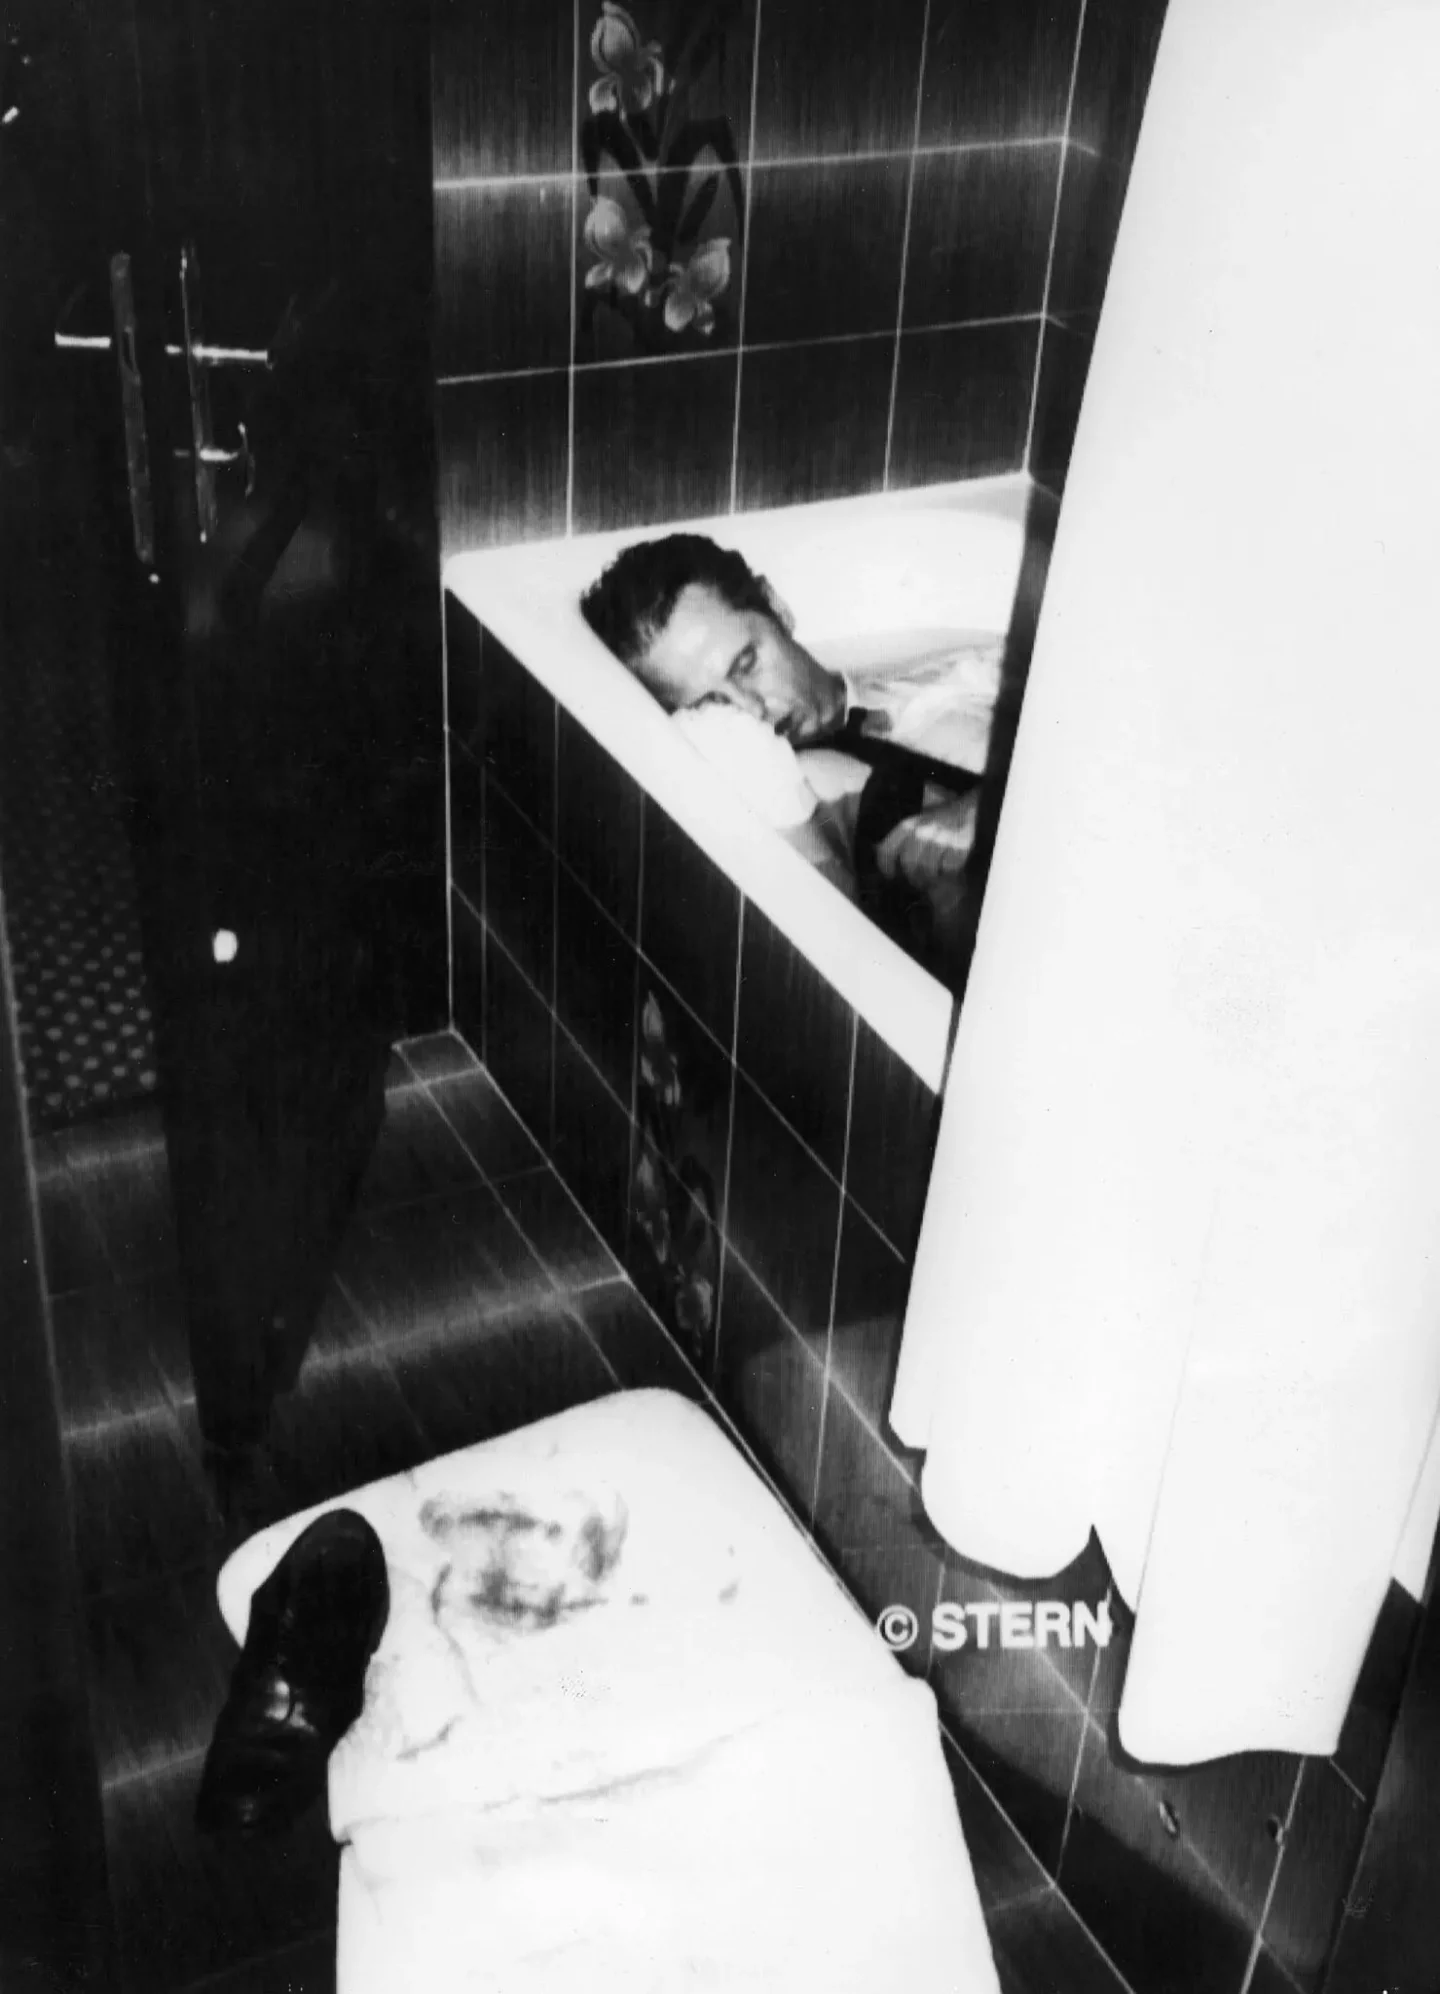 Thomas Demand, der Künstler hinter den täuschenden Fotografien, Uwe Barschel, der Politiker, wurde 1987 tot in einer Badewanne in einem Genfer Hotelzimmer aufgefunden. Das Bild ging als Titelbild des Magazin STERN ins kollektive Gedächtnis ein.